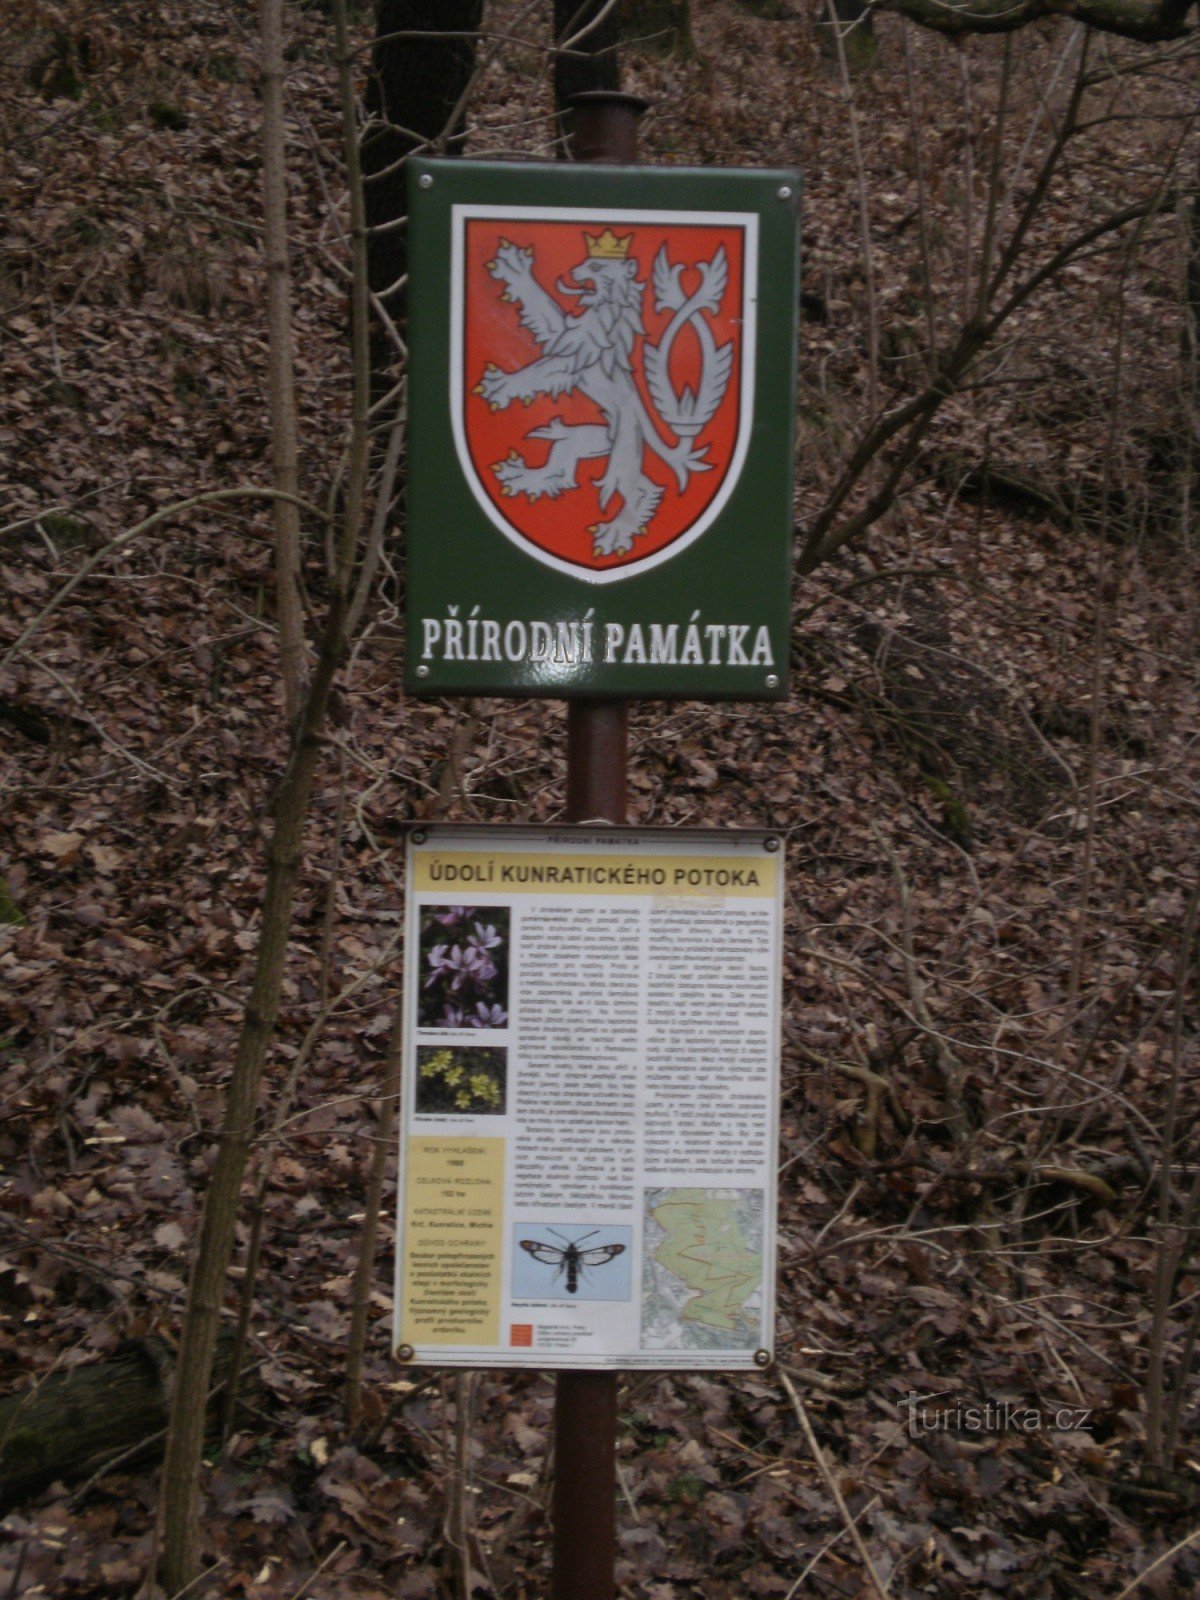 Ao redor da Floresta Kunratic